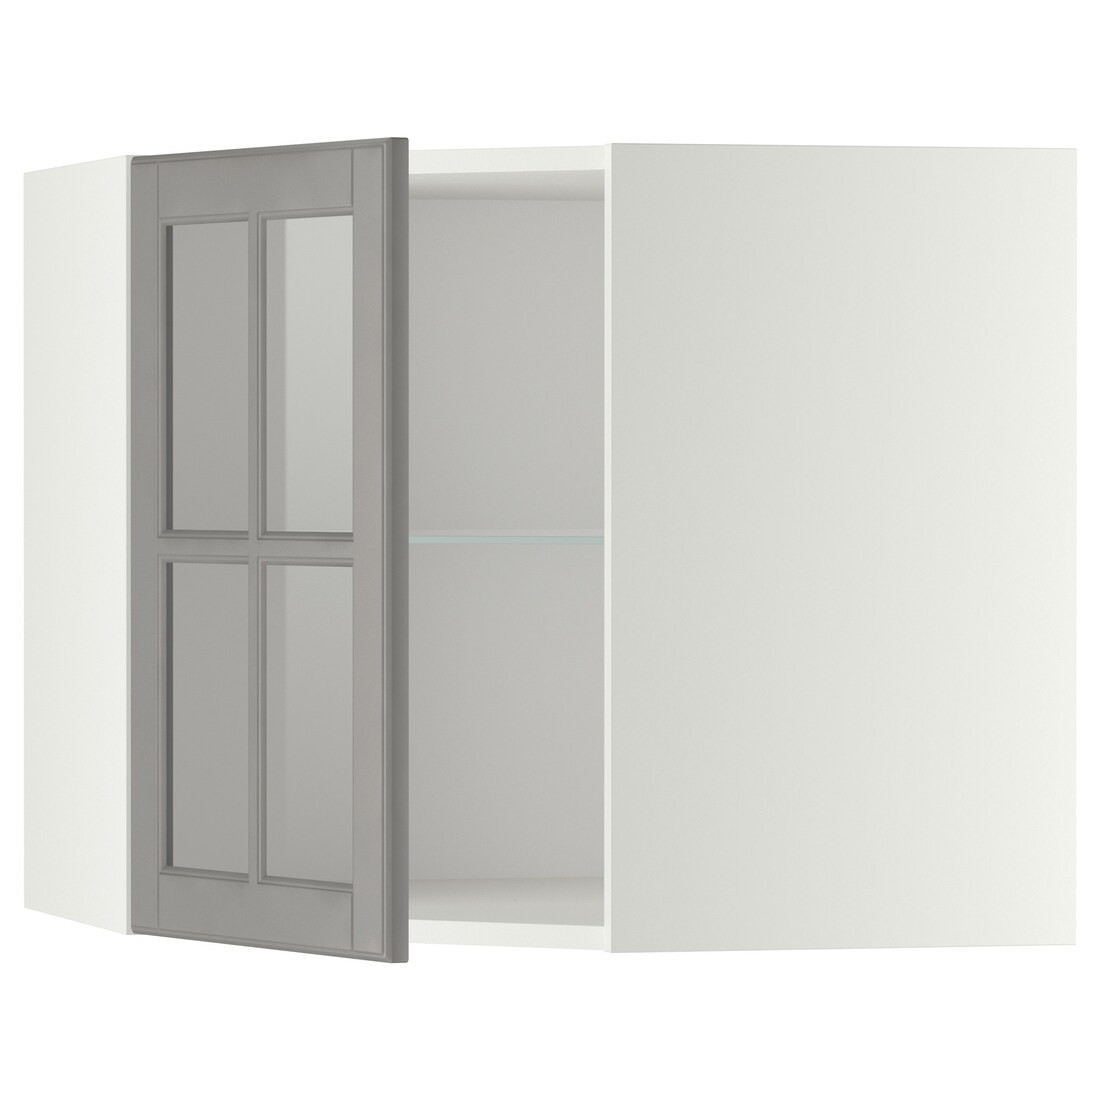 METOD МЕТОД Угловой настенный шкаф с полками / стеклянная дверь, белый / Bodbyn серый, 68x60 см